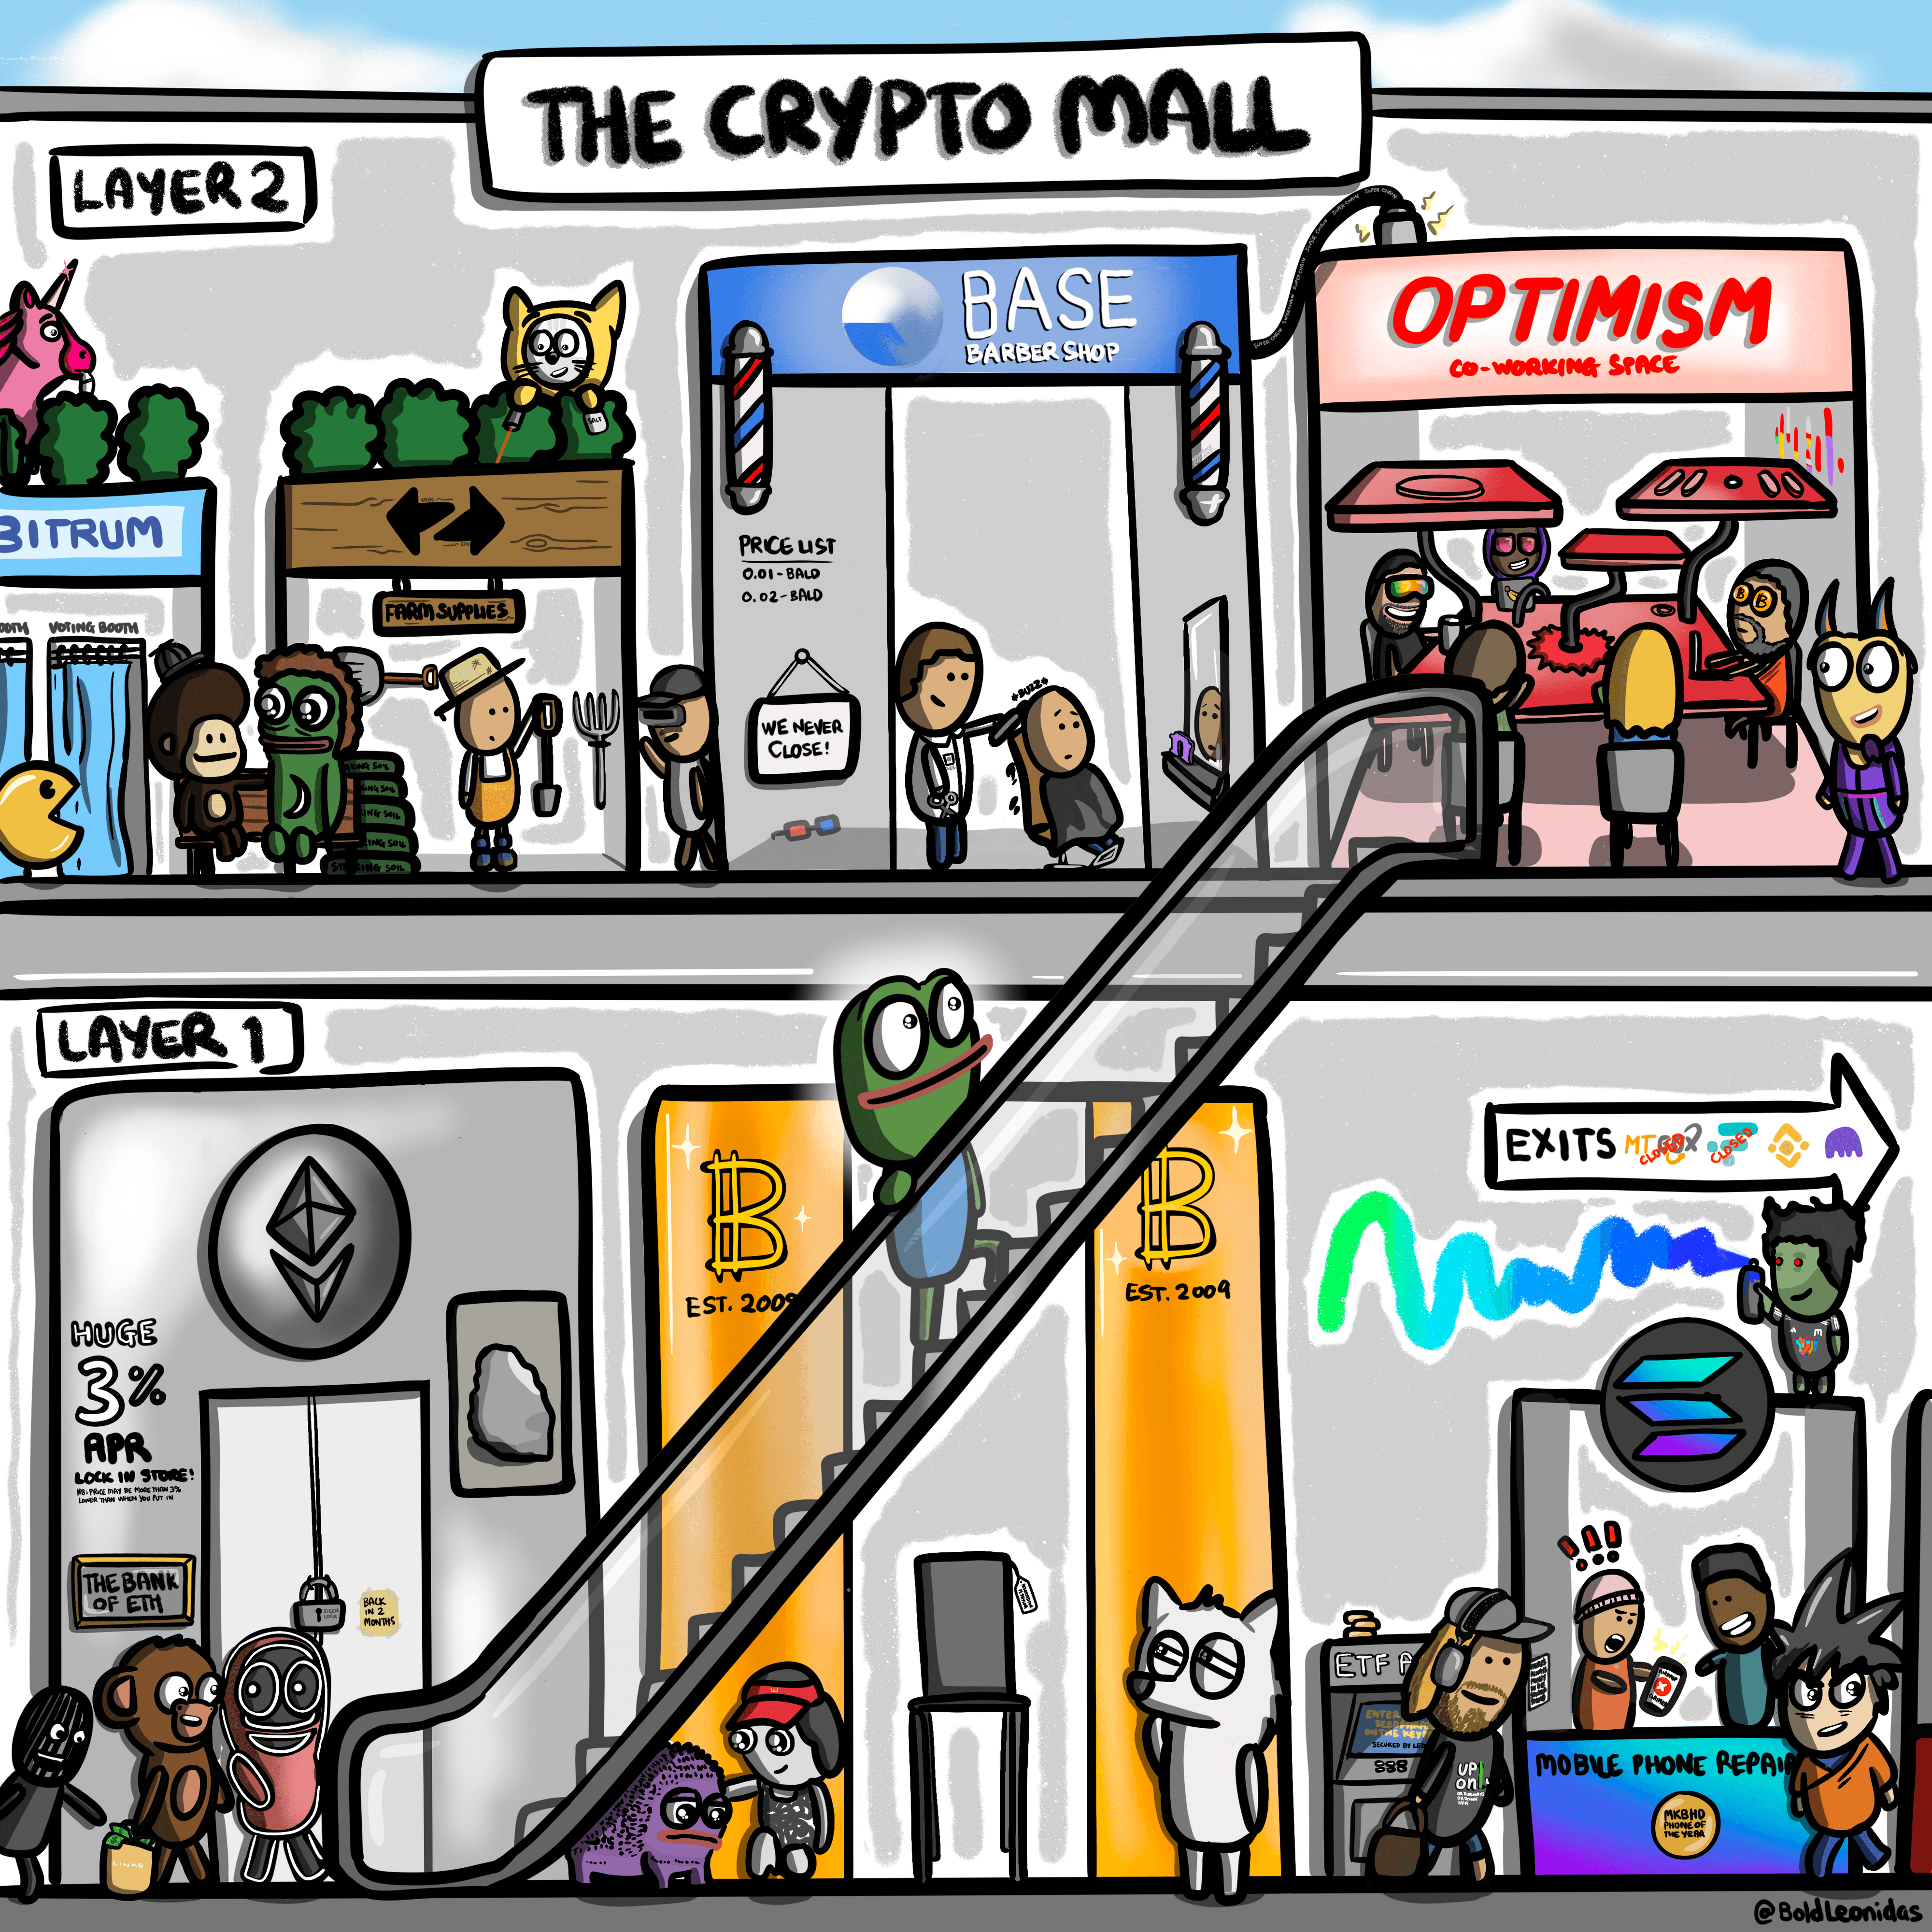 The Crypto Mall